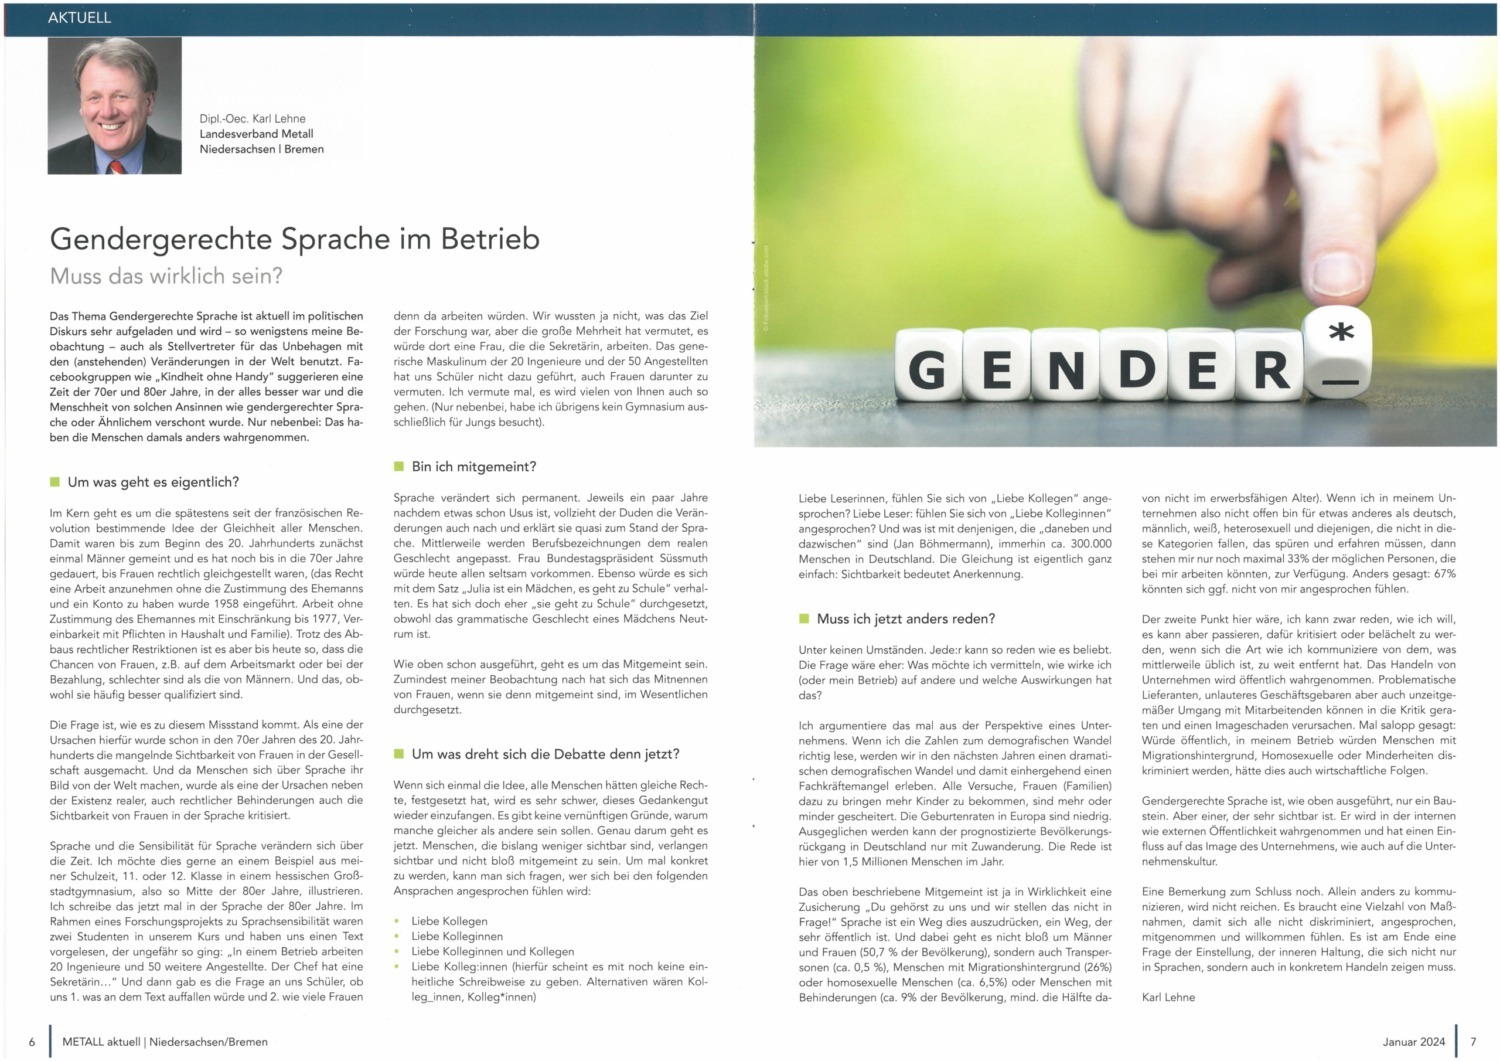 Gendergerechte Sprache - MetallAktuell 01/24